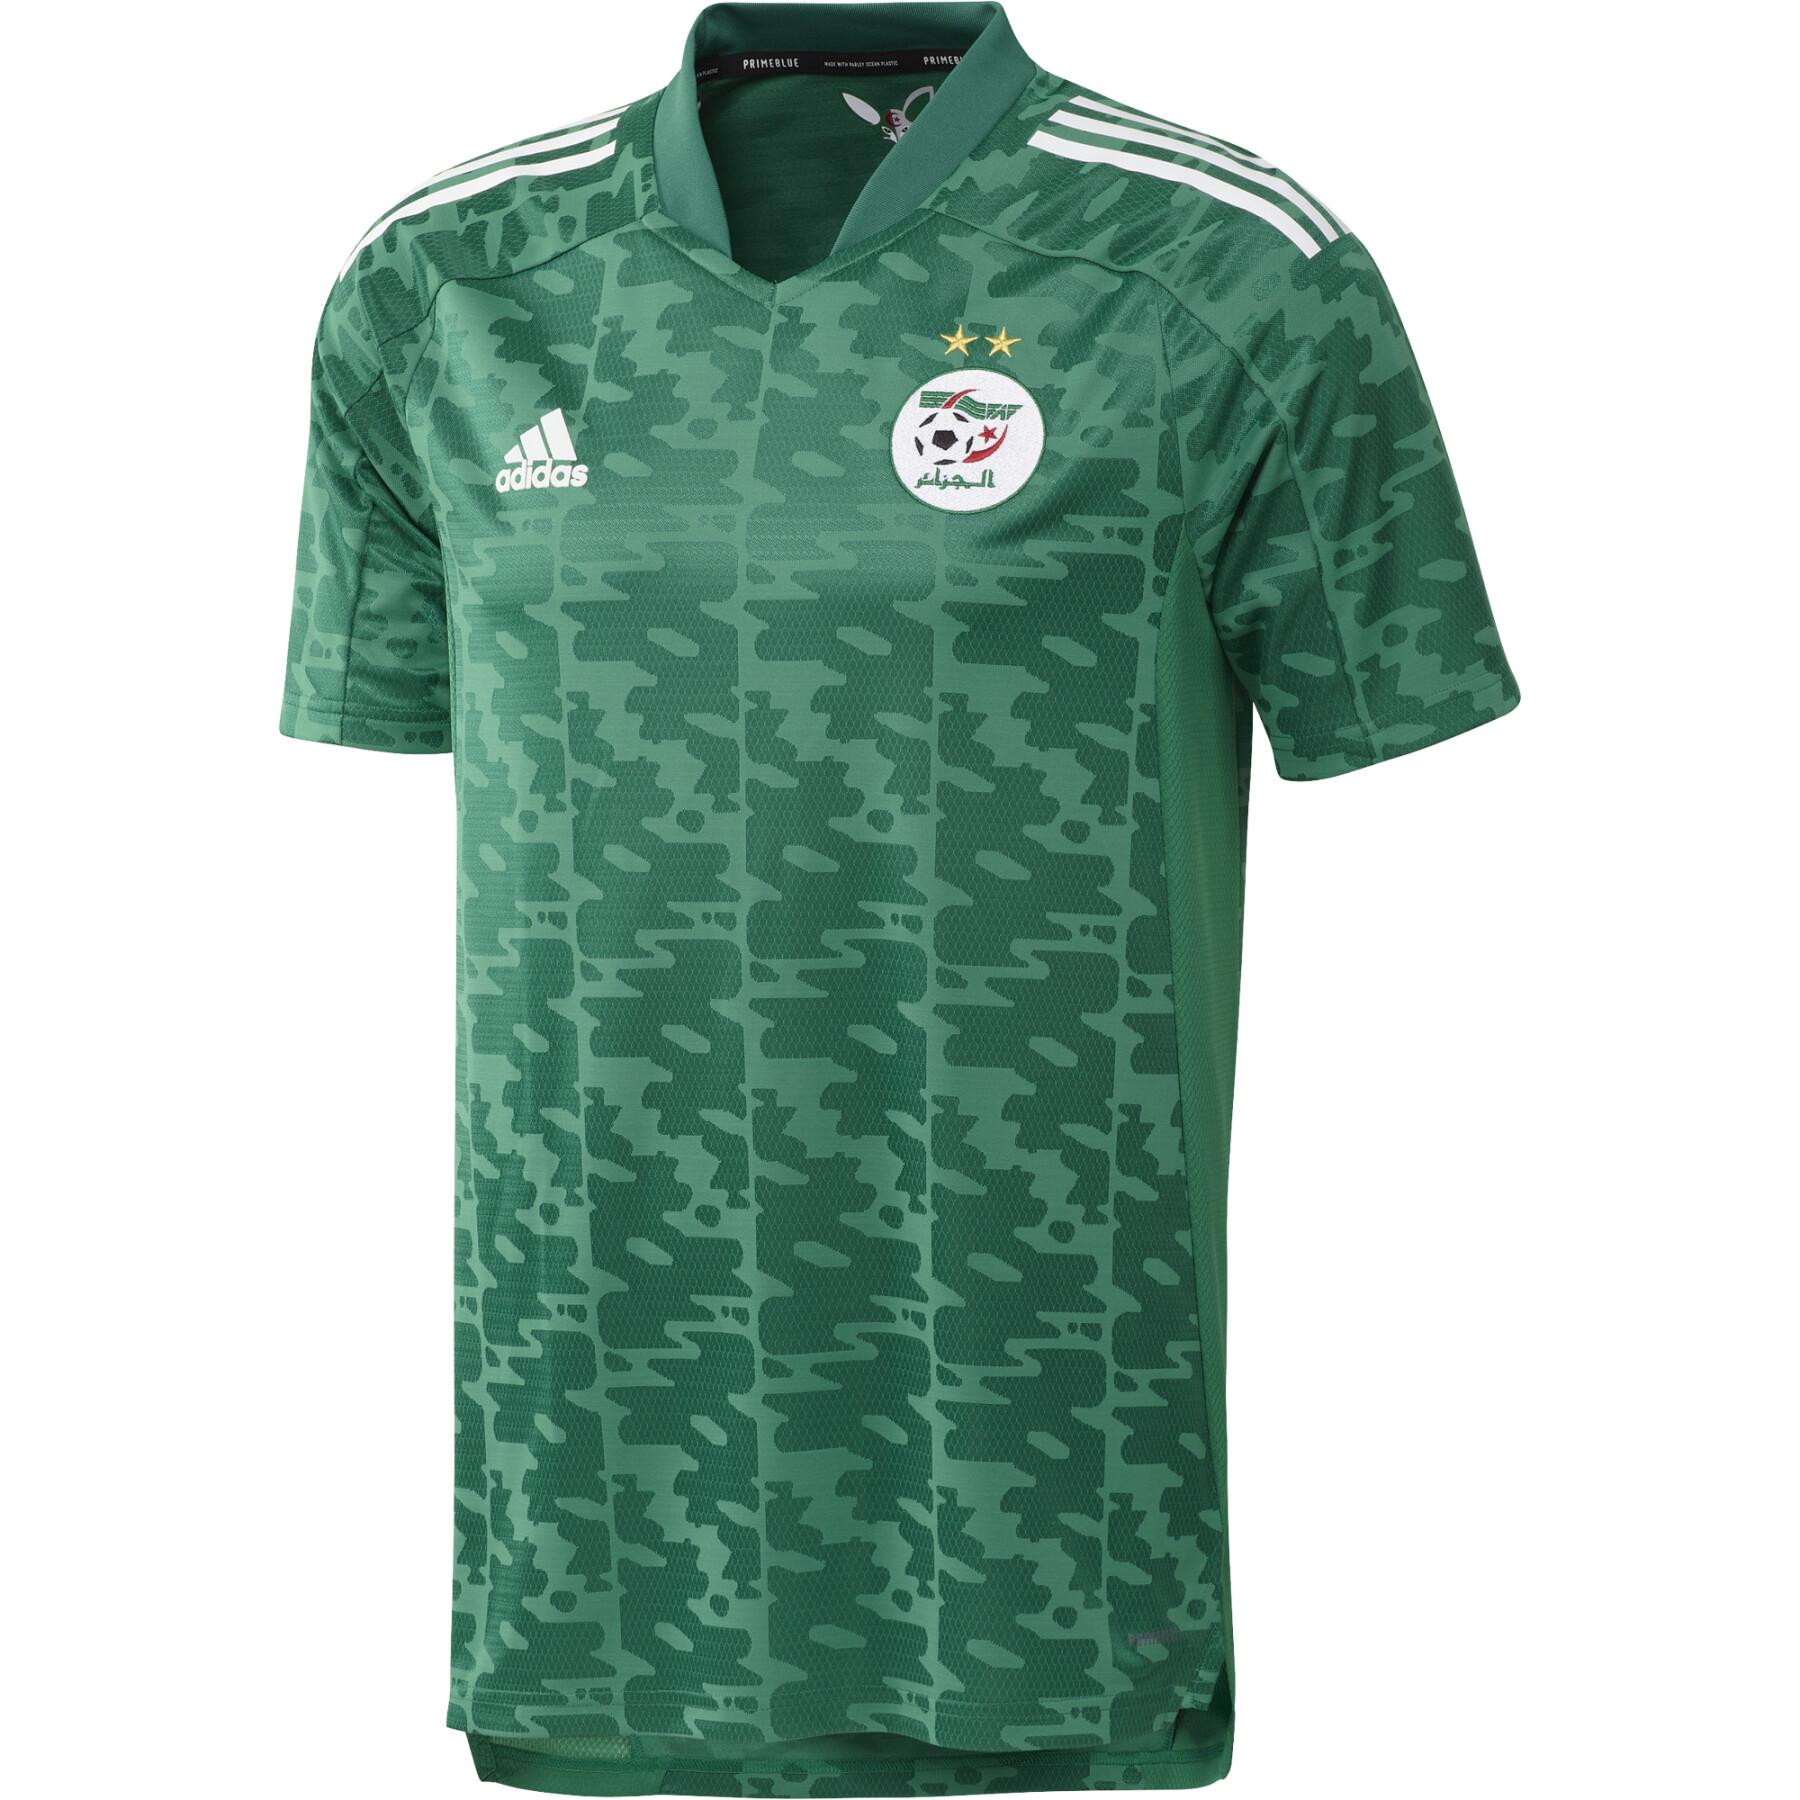 Away jersey Algérie 2021/22